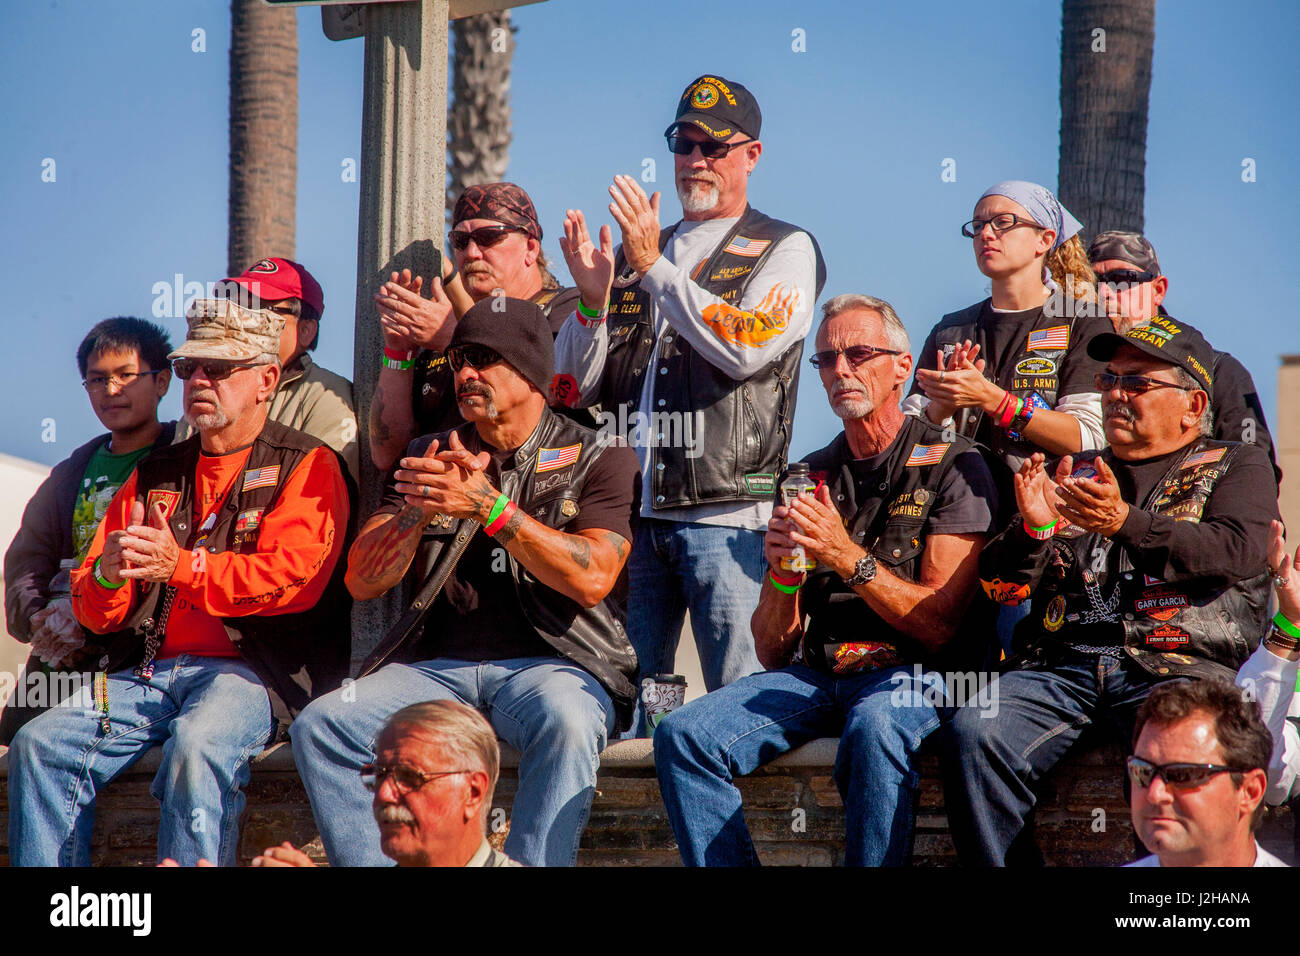 Erfahrene Motorradfahrer applaudieren Redner bei einer Kundgebung in Huntington Beach, CA. Hinweis Jacken und Caps. Stockfoto